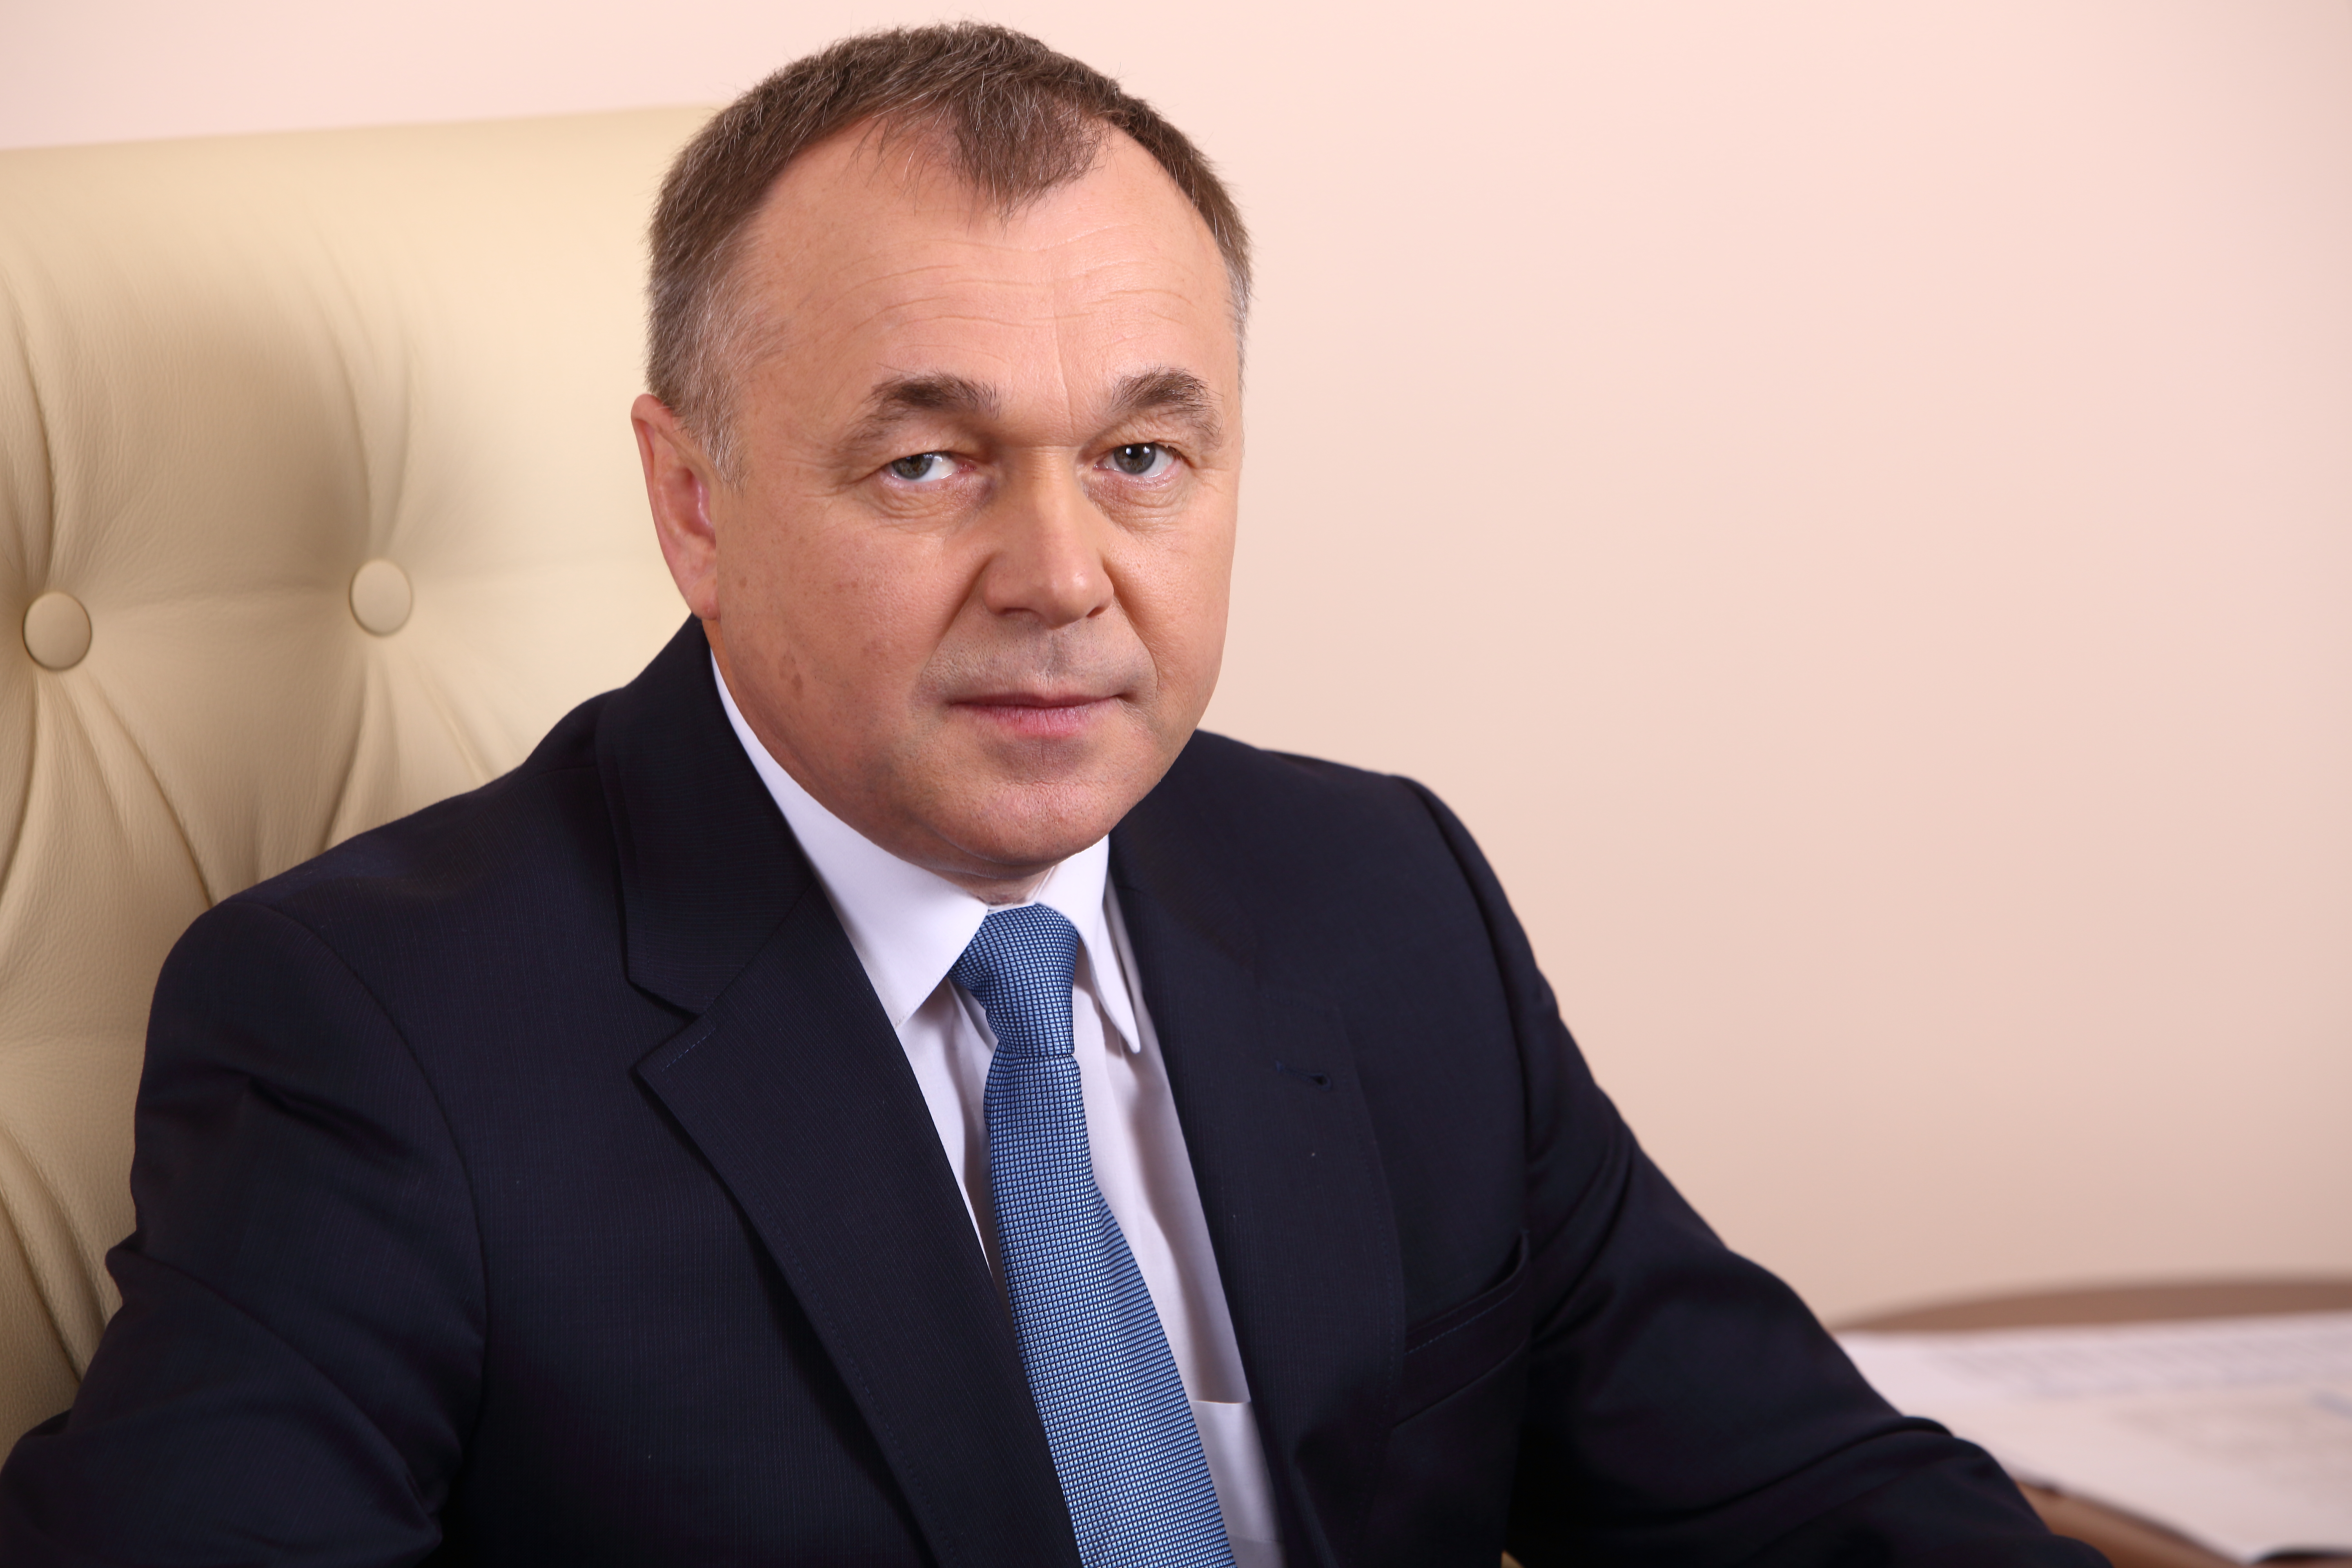 Отключения должников будут продолжены, - генеральный директор ООО «Газпром межрегионгаз Пермь» Александр Грачев